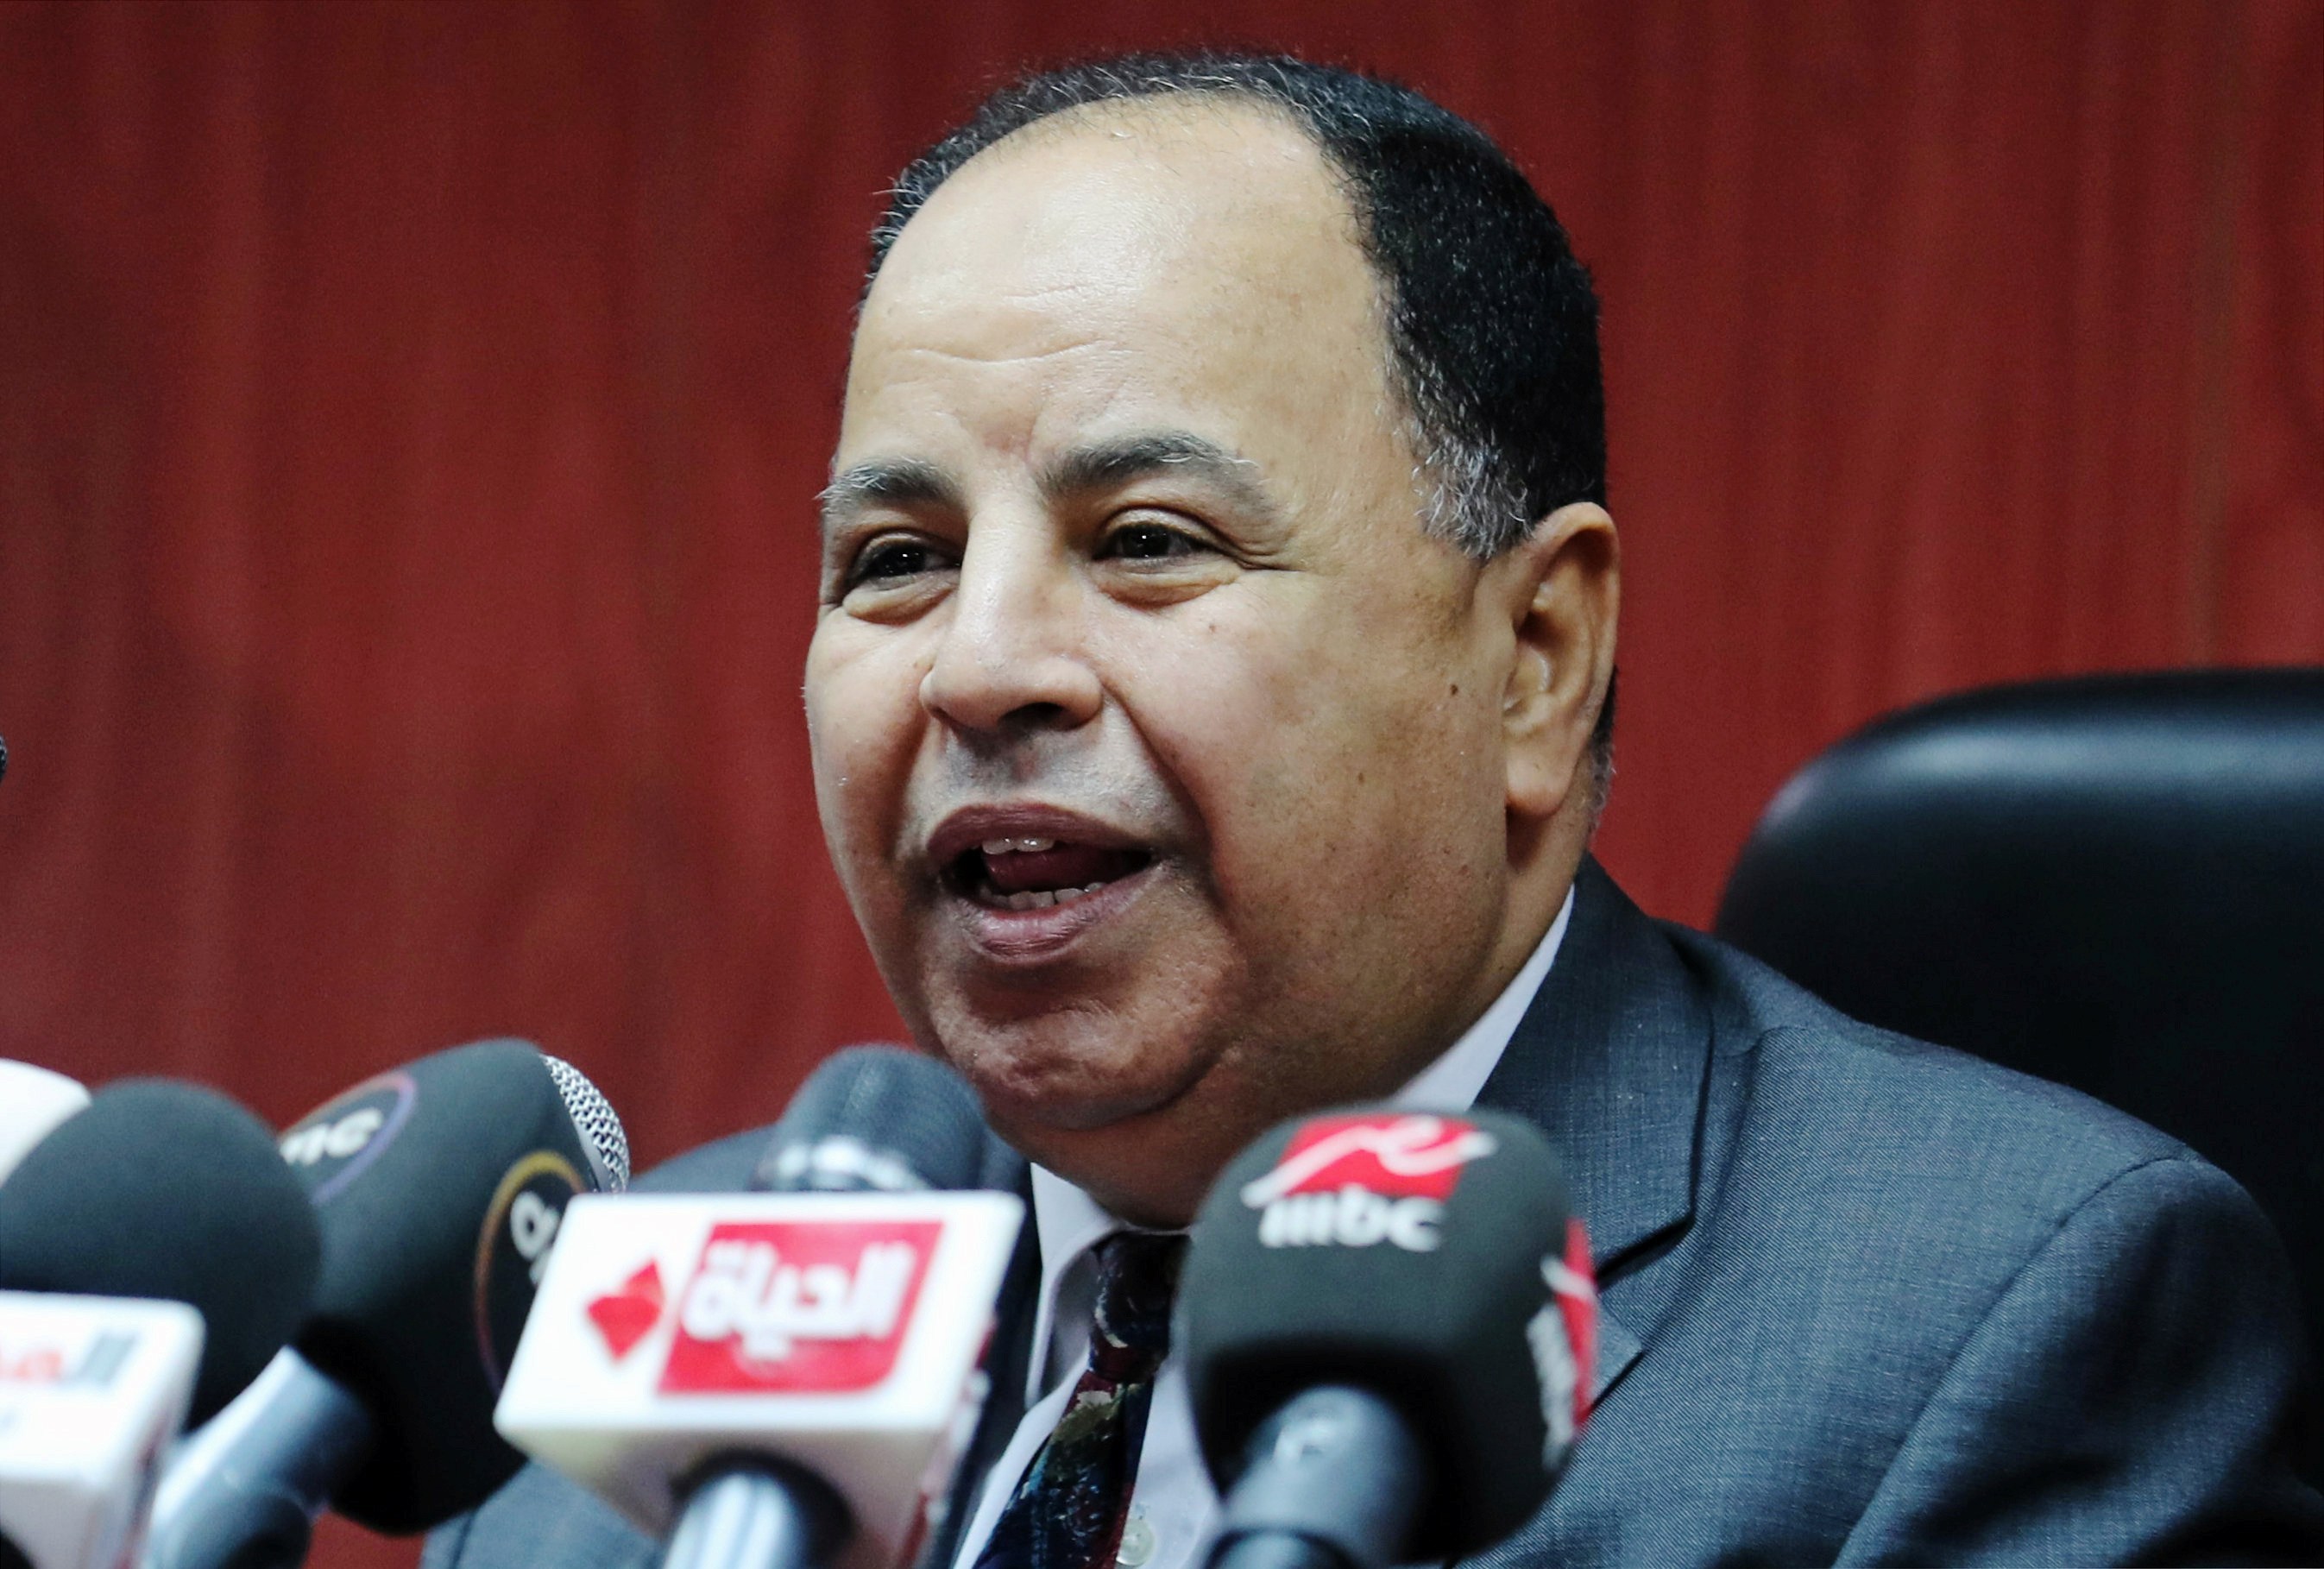 وزير المالية المصري محمد معيط يتحدث خلال مؤتمر صحفي في القاهرة، مصر 5 يوليو (تموز) 2018. (رويترز)